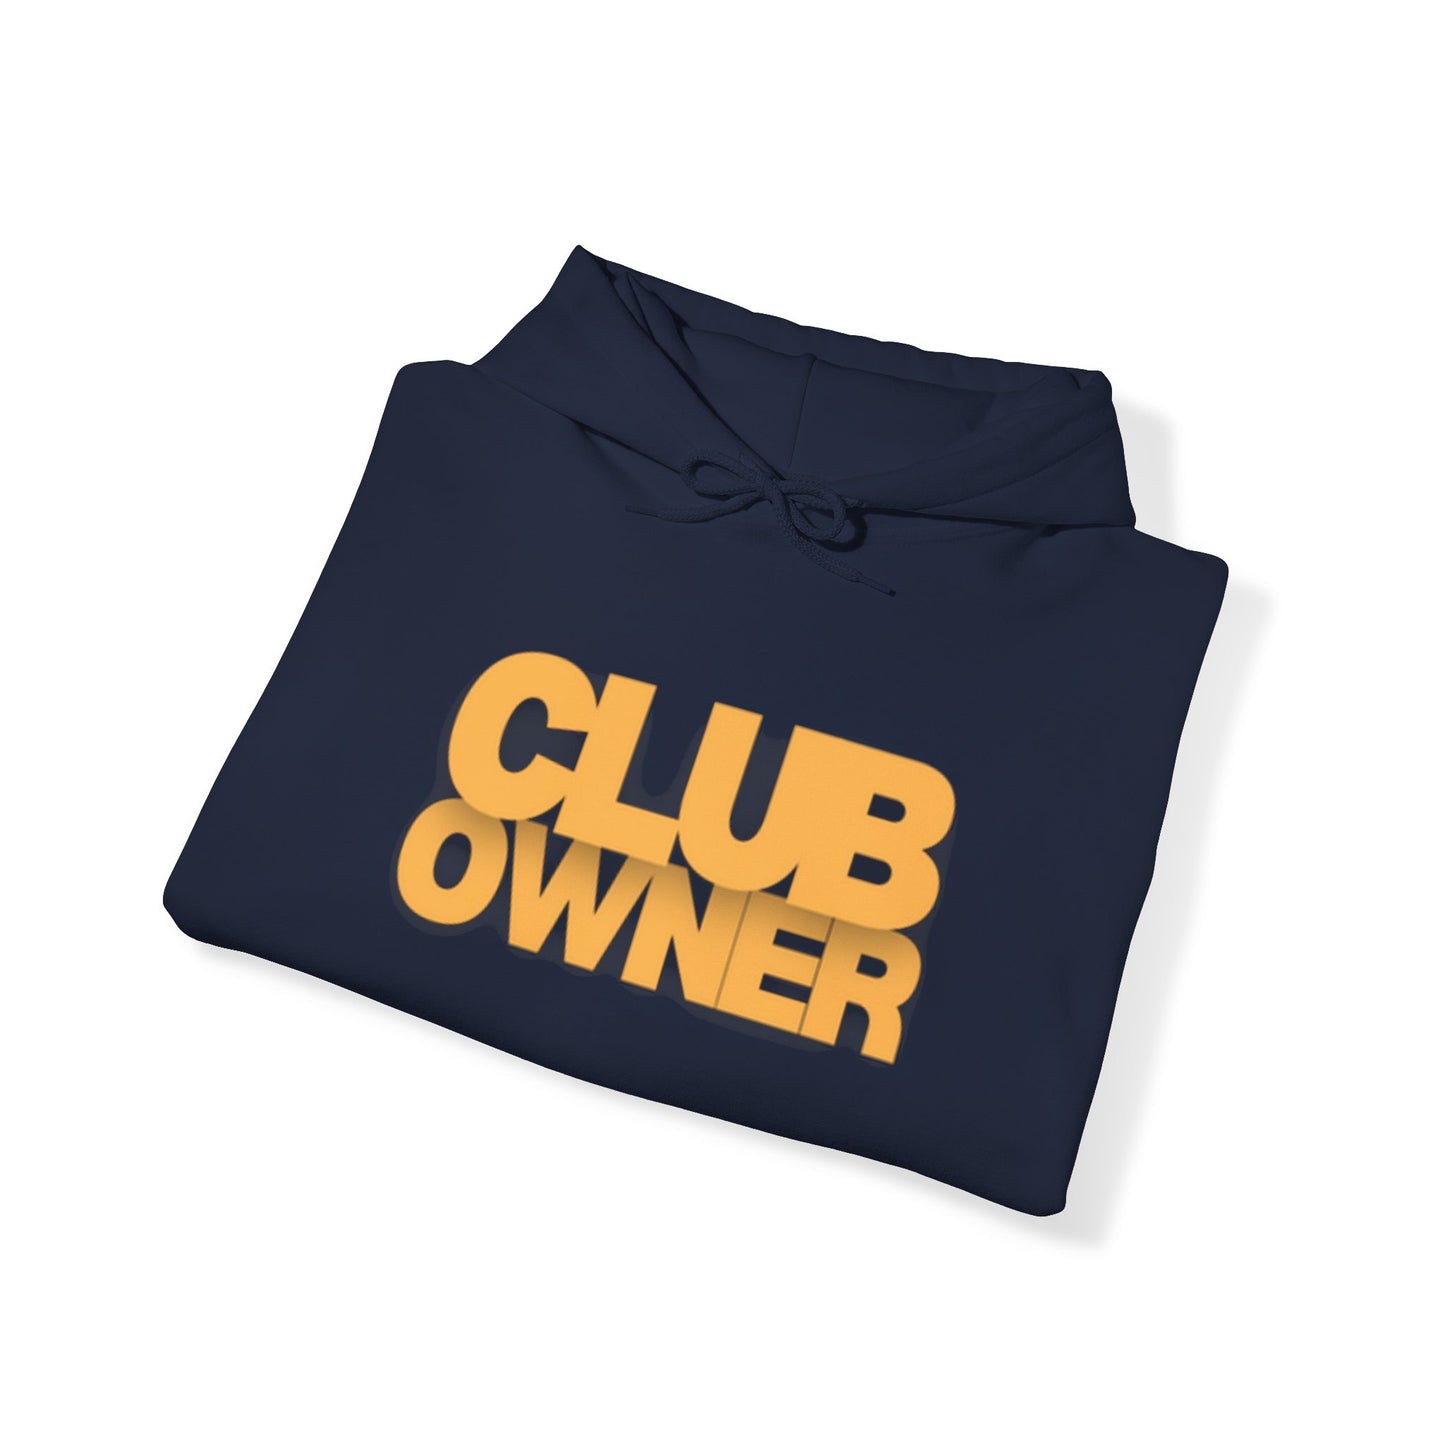 Club Owner